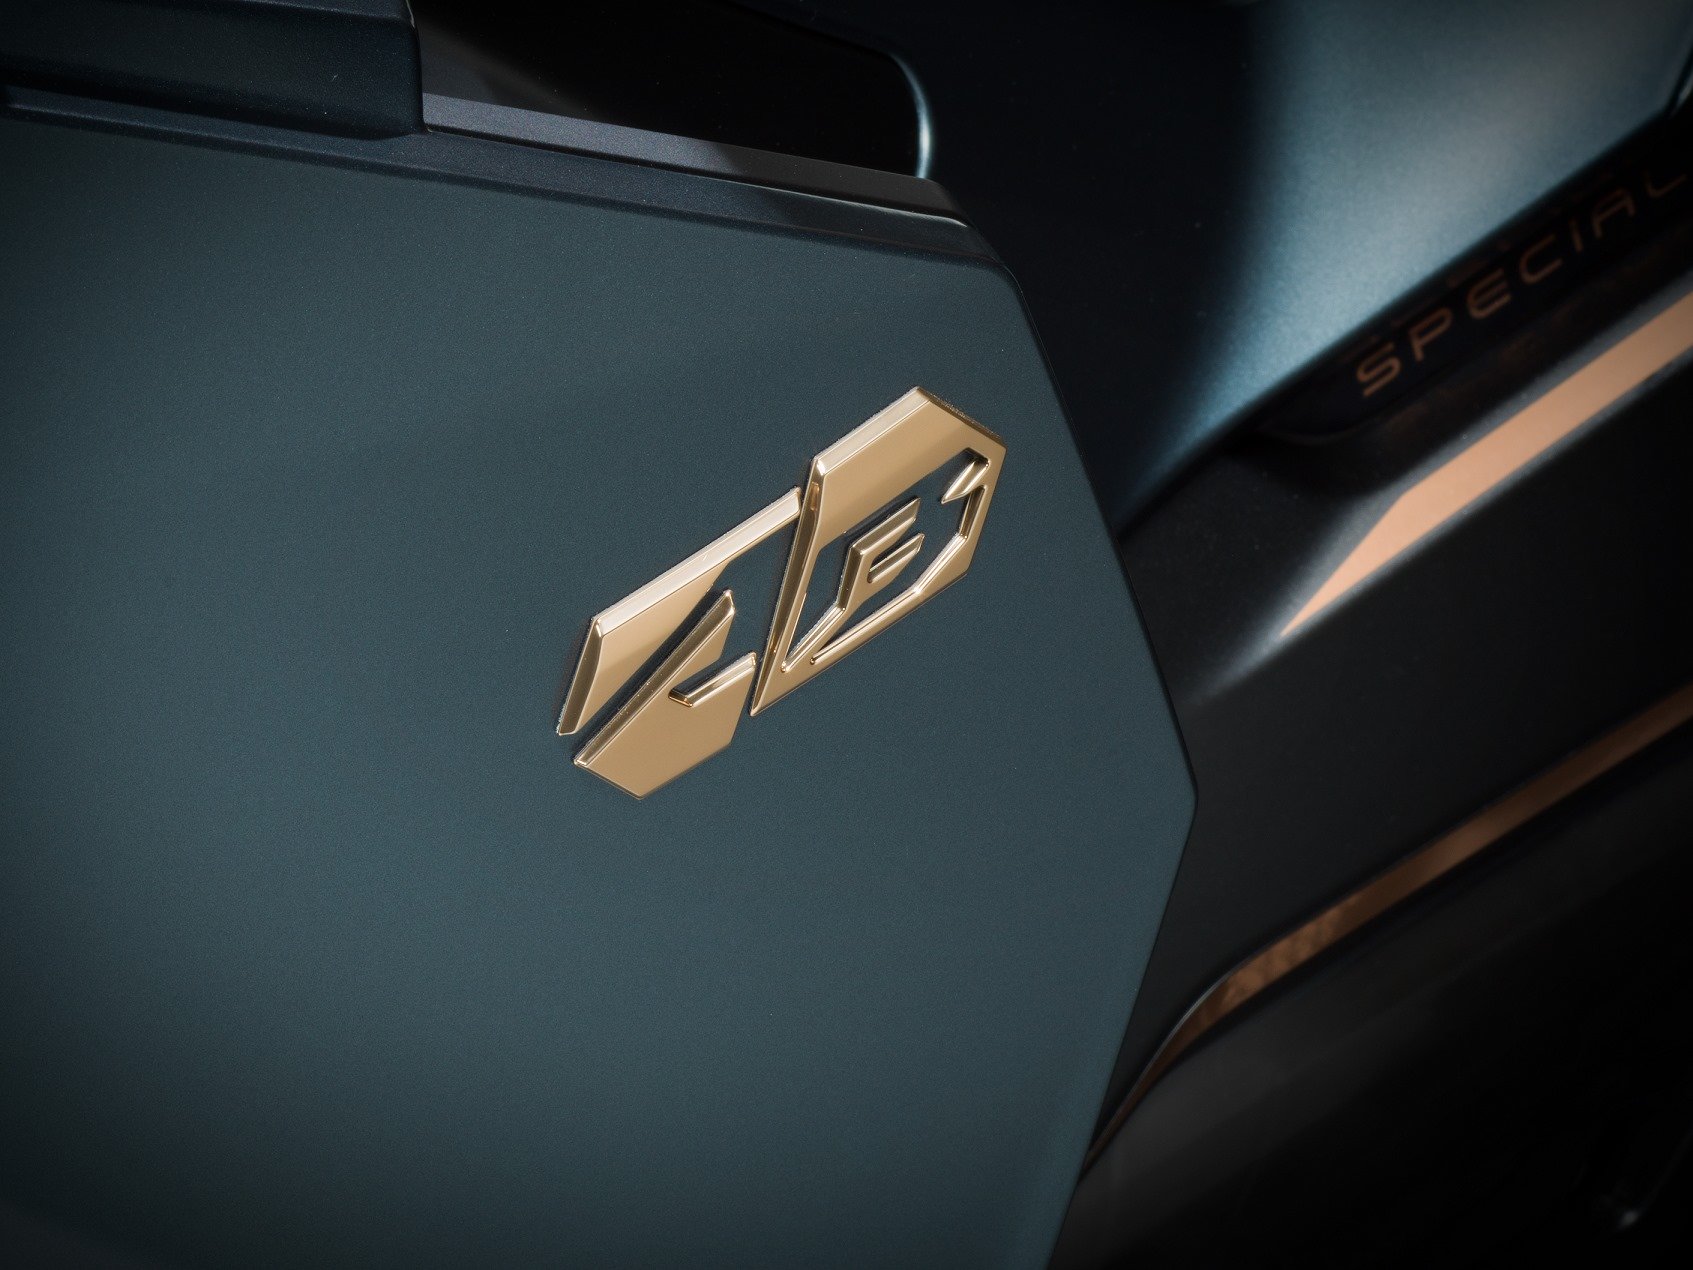 Honda ra mắt Air Blade 2020 với hai phiên bản, phanh ABS và thiết kế "hiền" hơn thế hệ trước